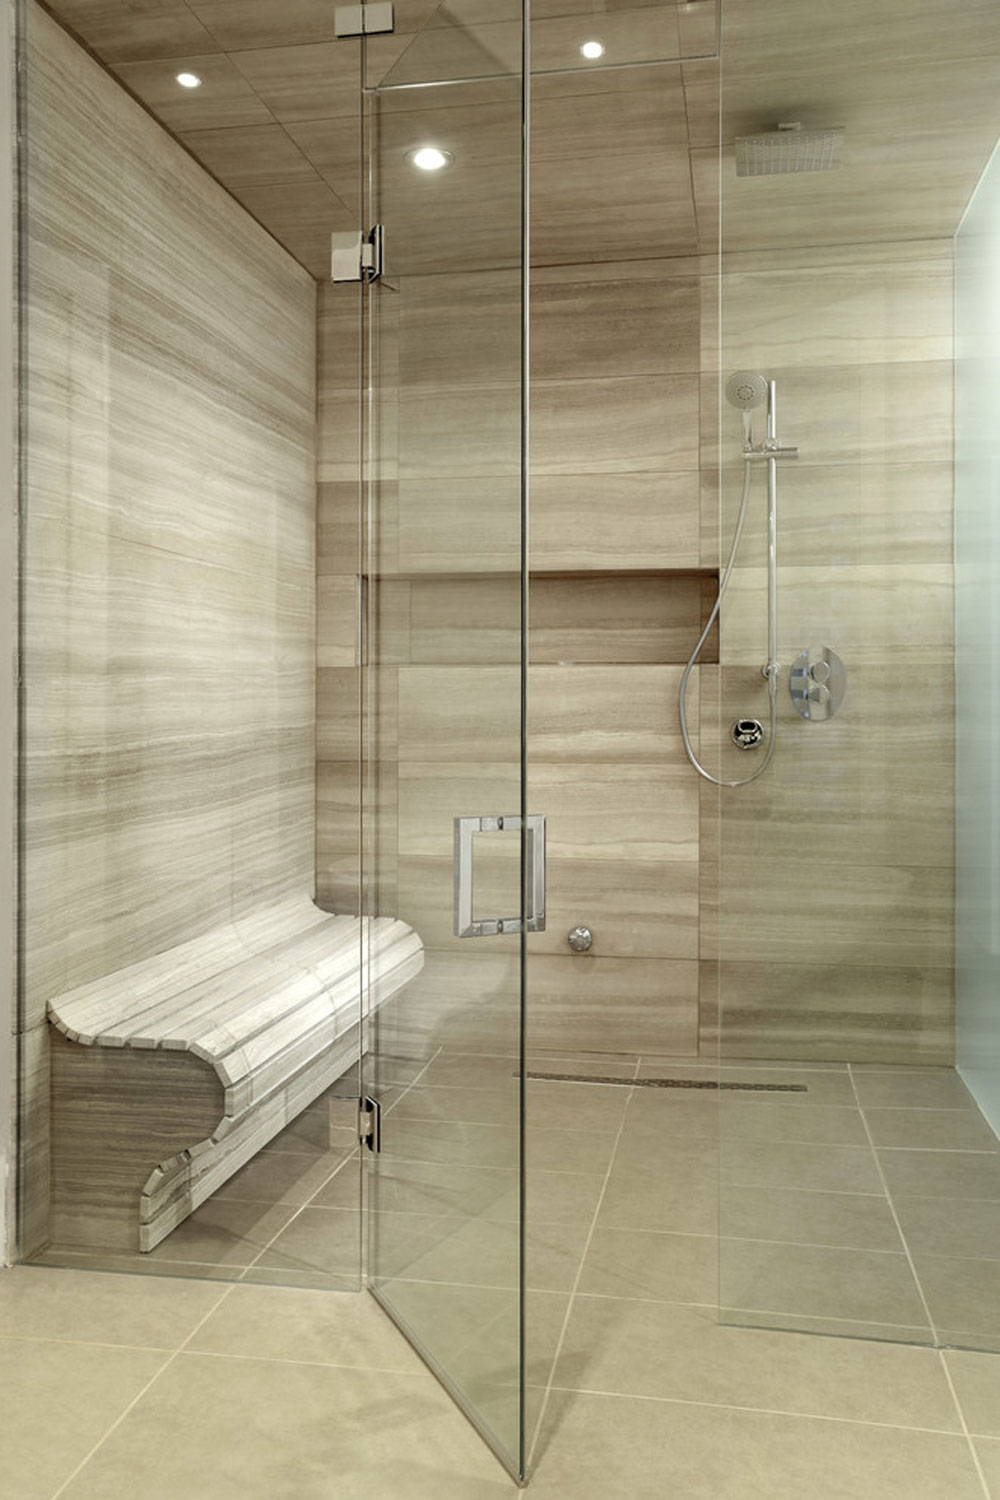 Madison-Avenue-The-Annex-Toronto-by-Sisters-in-Sync-Design duschvägg idéer och bästa praxis för ditt badrum